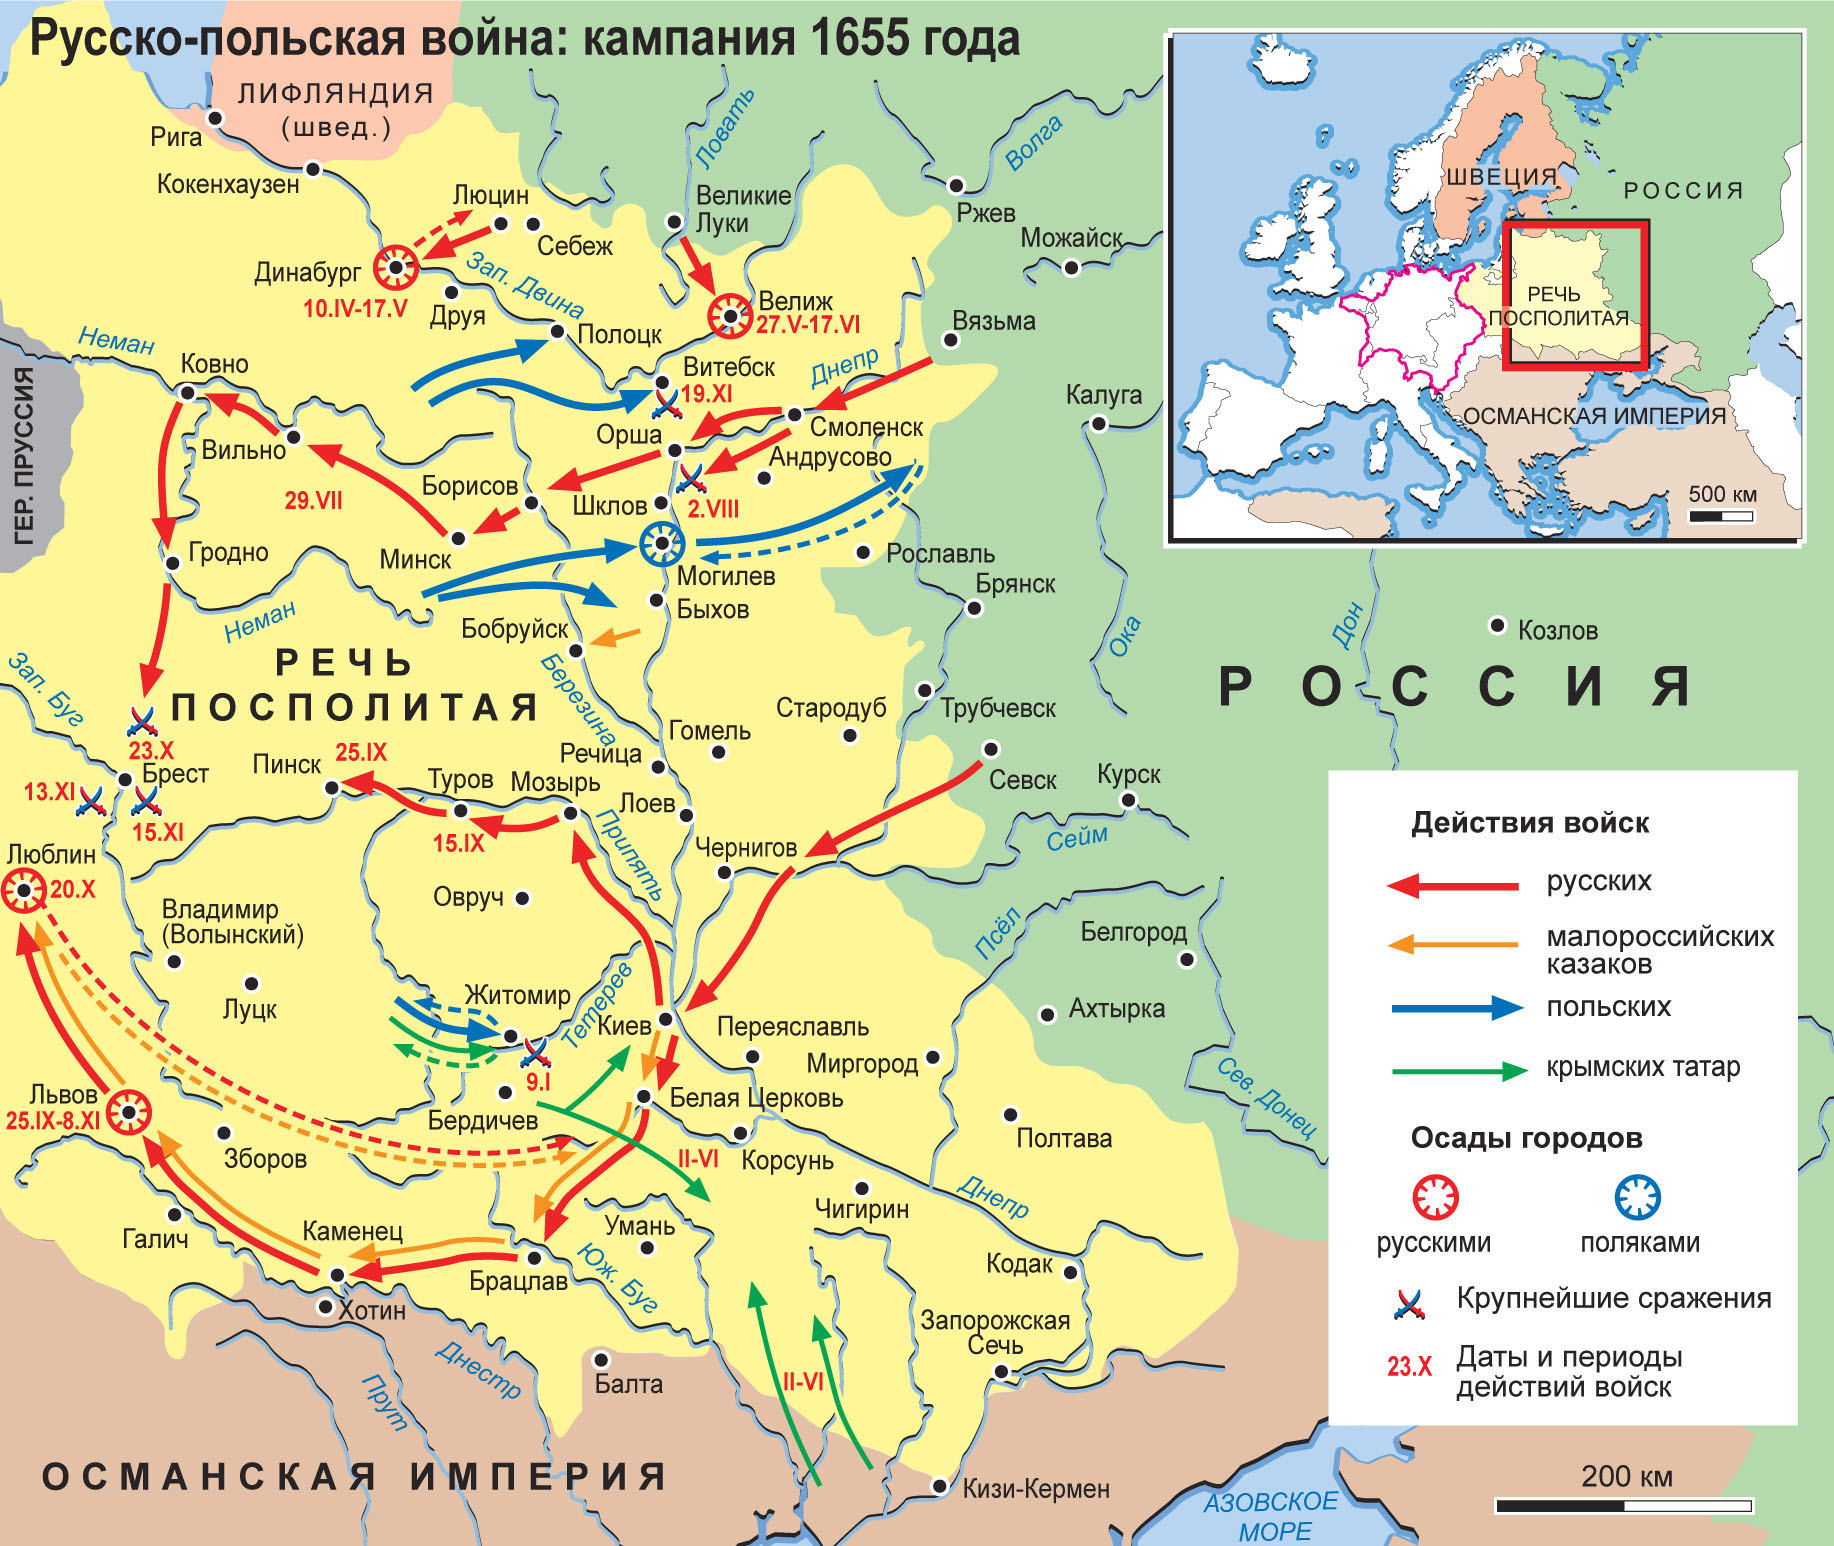 Карта: Русско-польская война 1654–1667 гг. Кампания 1655 г.